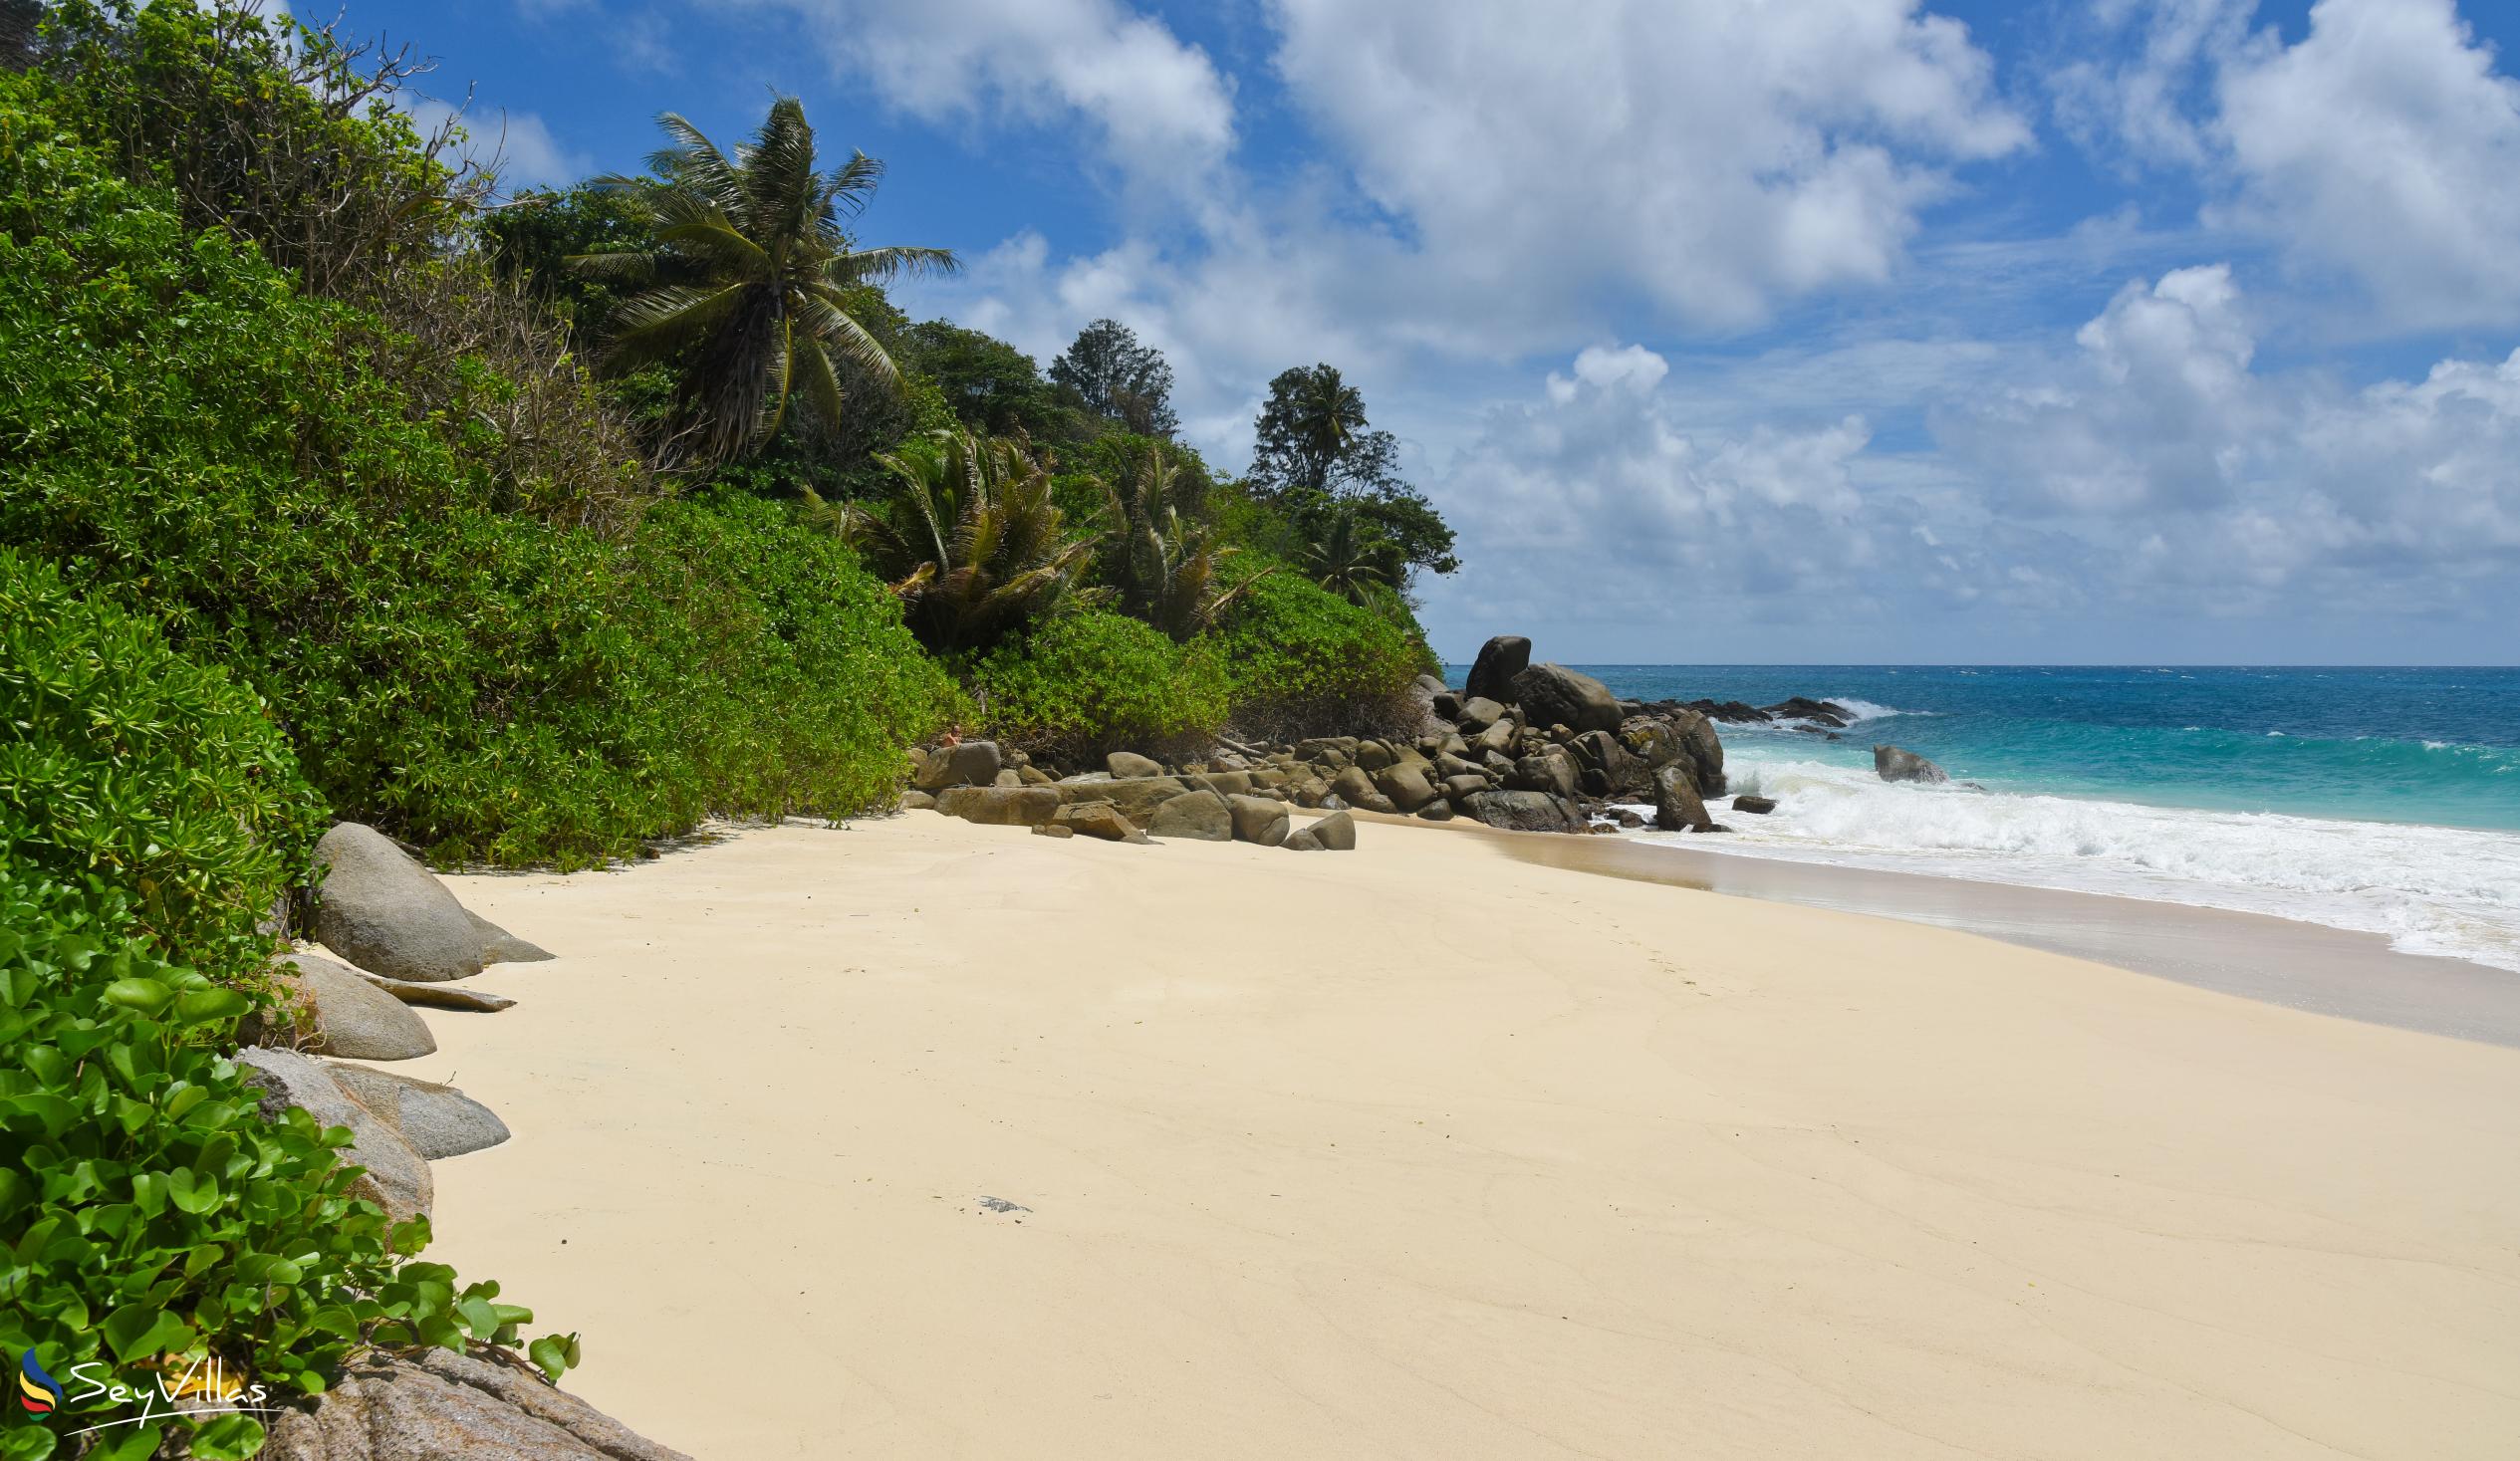 Photo 9: Carana Beach - Mahé (Seychelles)